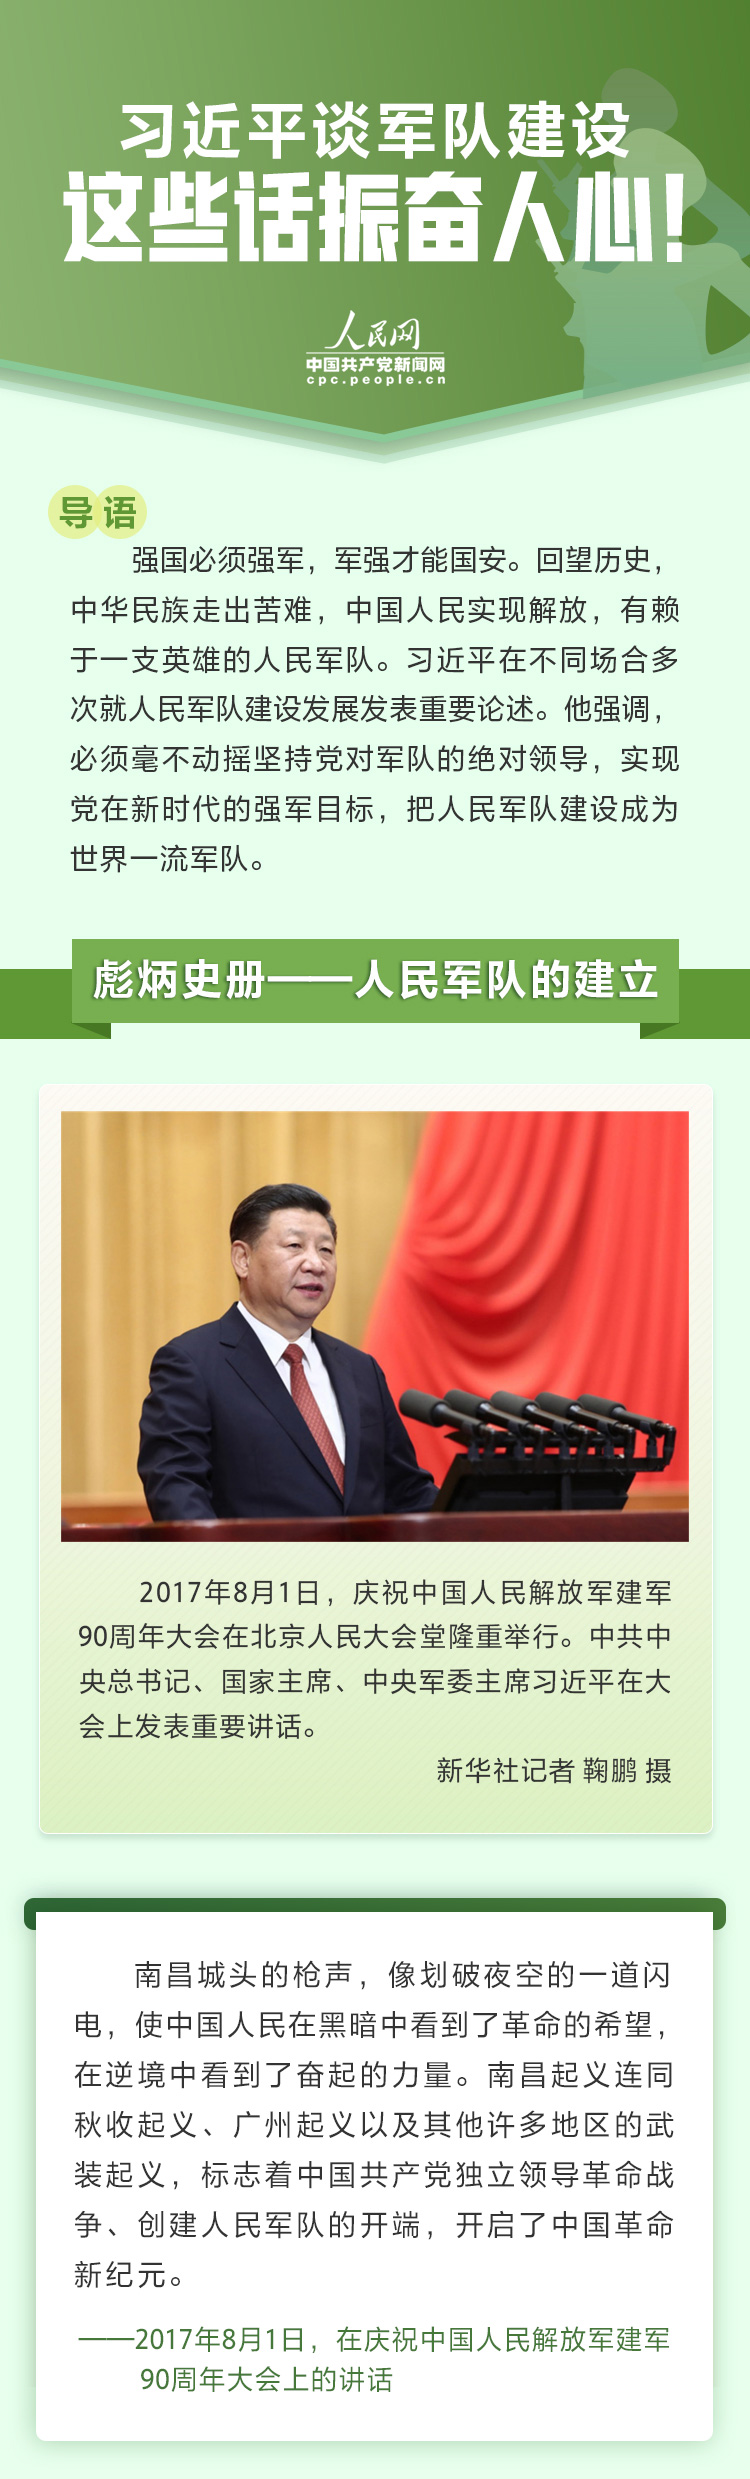 习近平谈军队建设 人民网-中国共产党新闻网.jpg